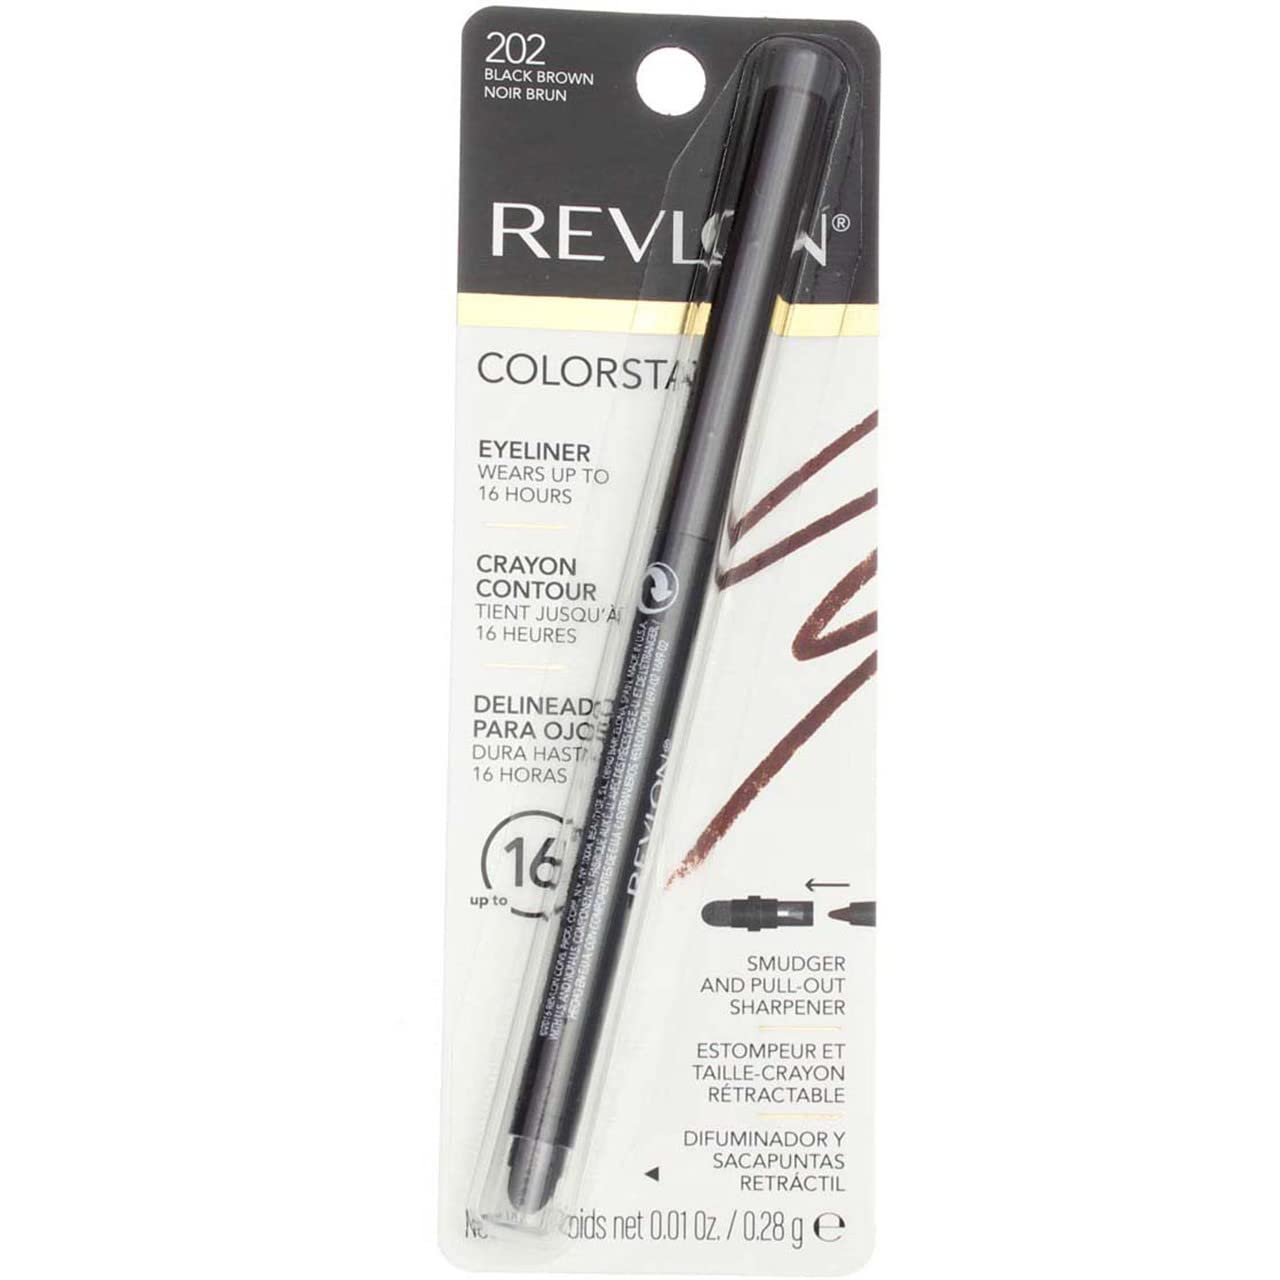 Revlon ColorStay Eyeliner Pencil, Black Brown [202], 0.01  (Pack of 5)